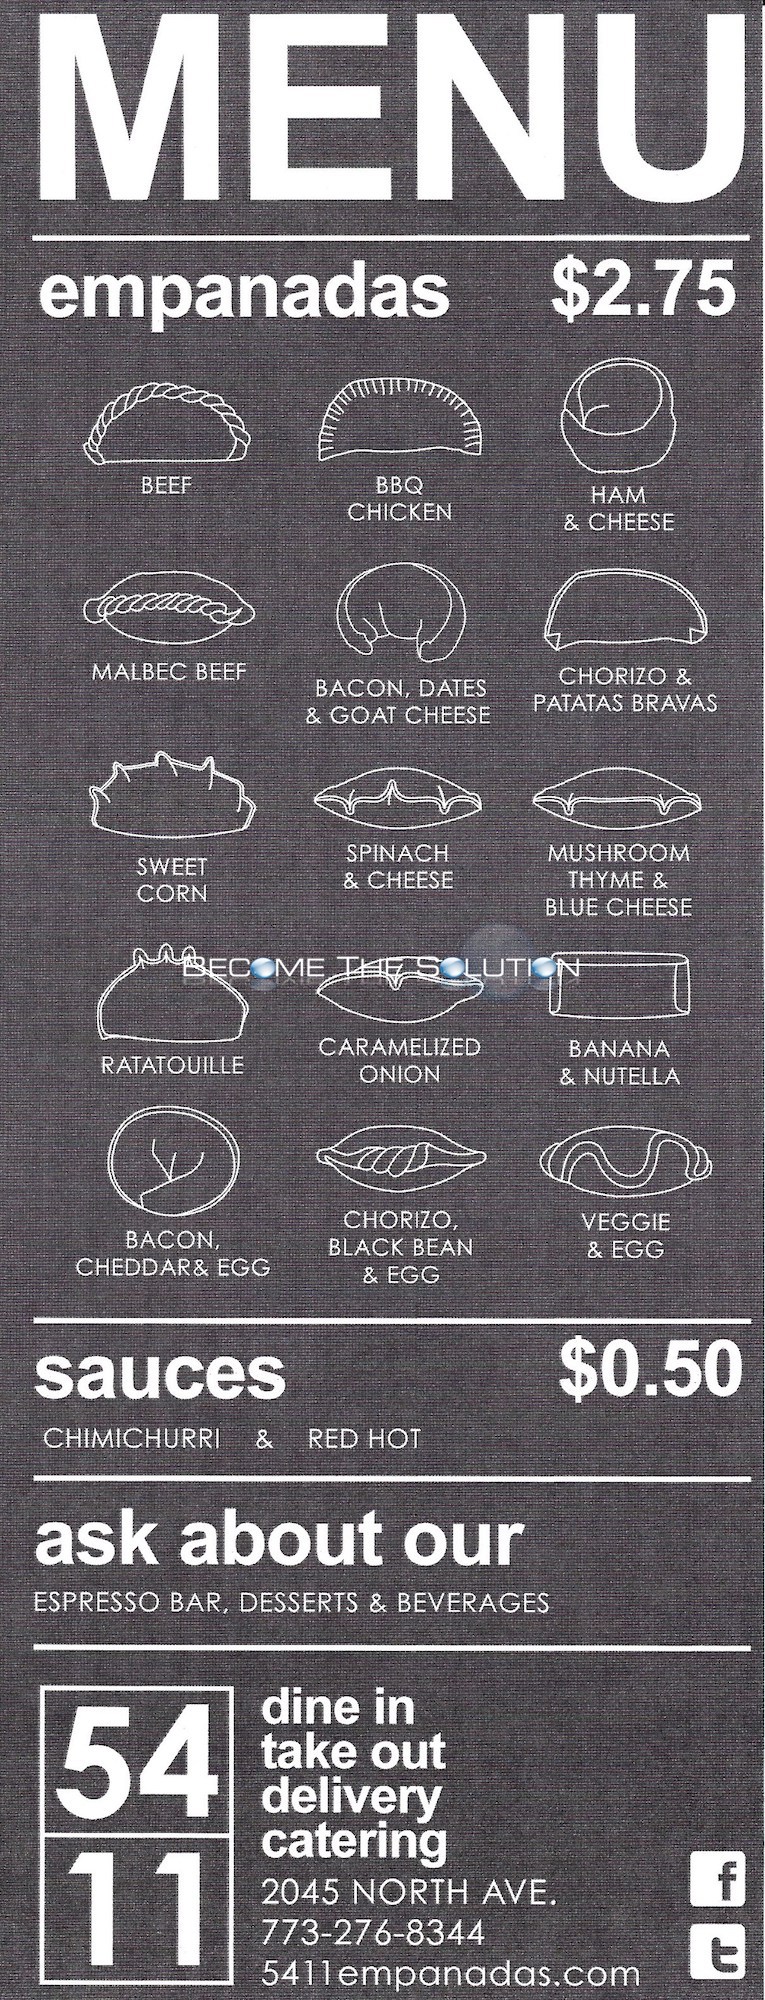 5411 empanadas chicago menu 2